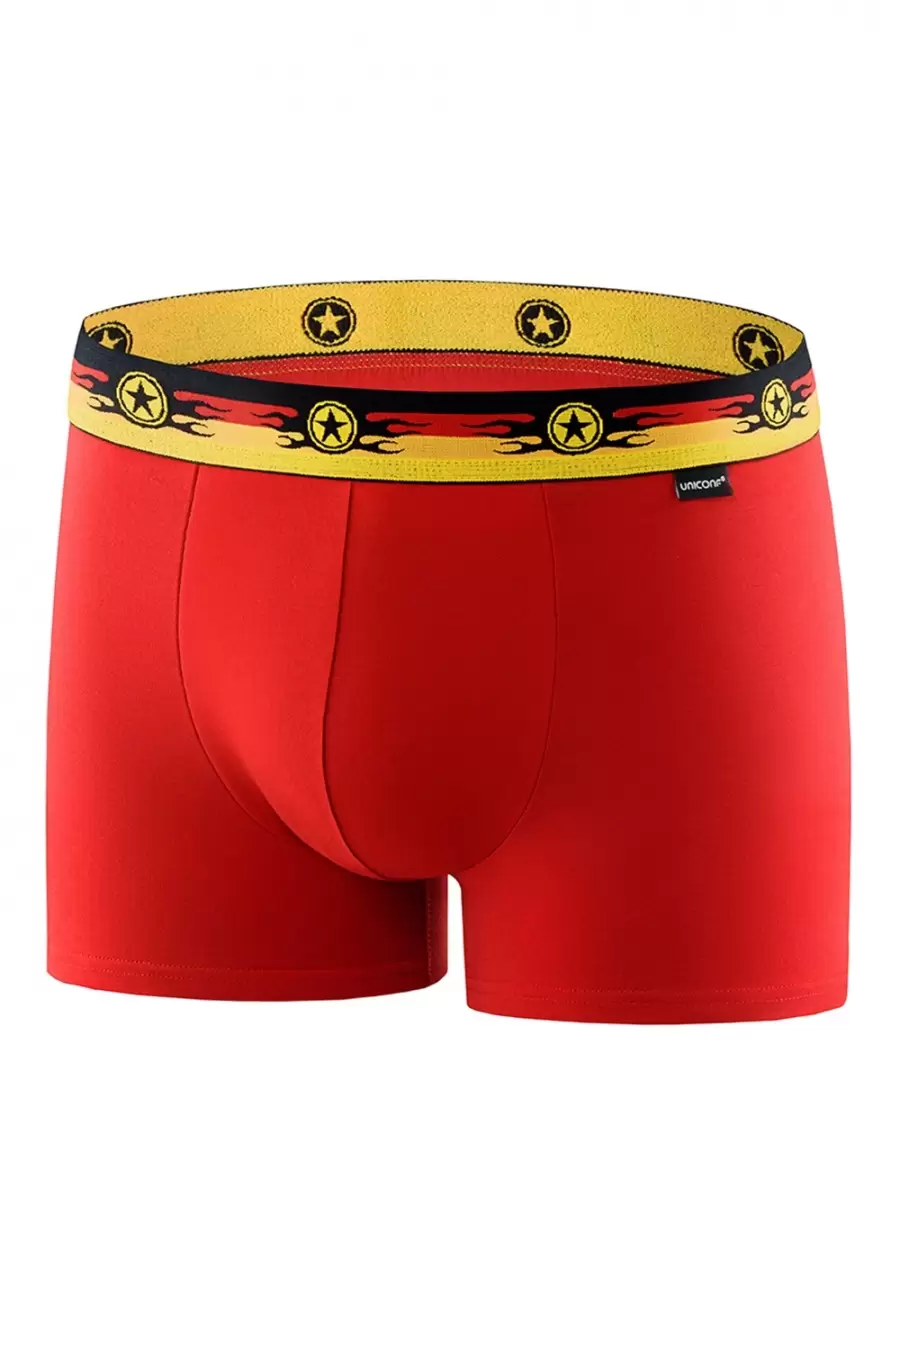 Uniconf BB33 Красный, мужские боксеры (M красный) (изображение 1)